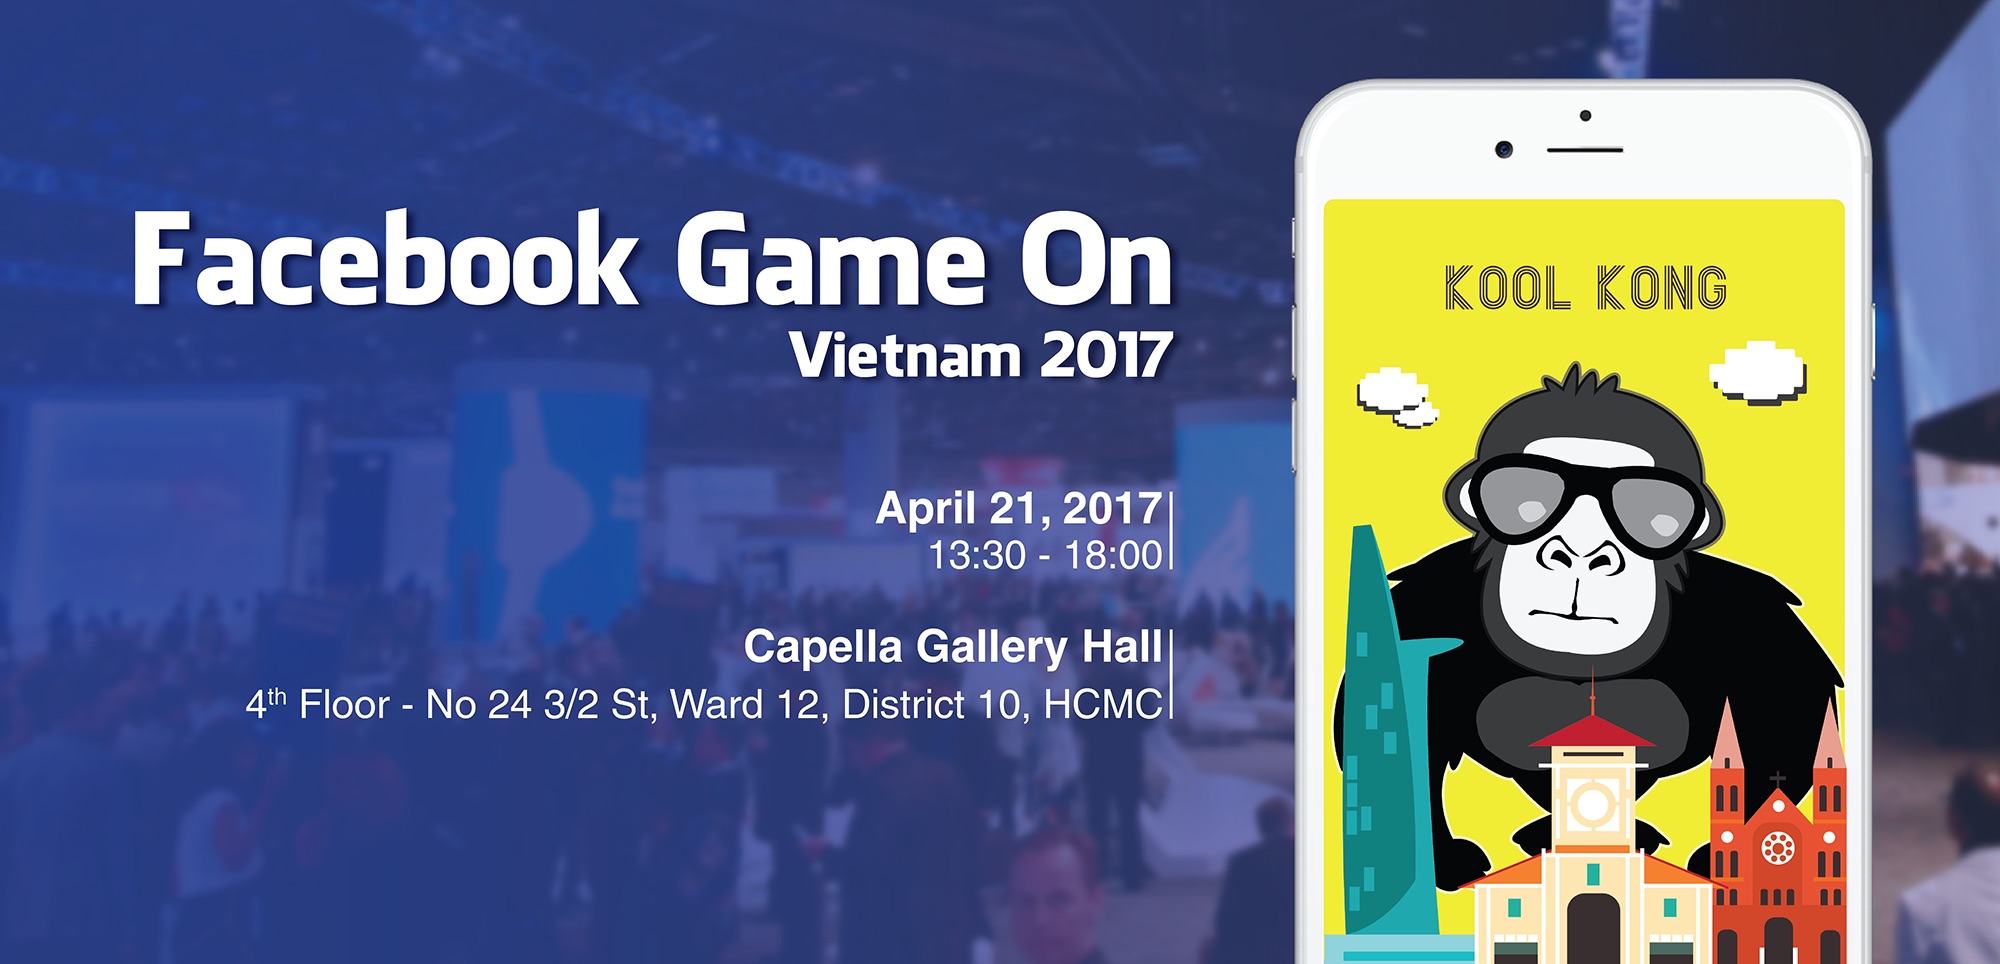 Facebook Game On Vietnam 2017